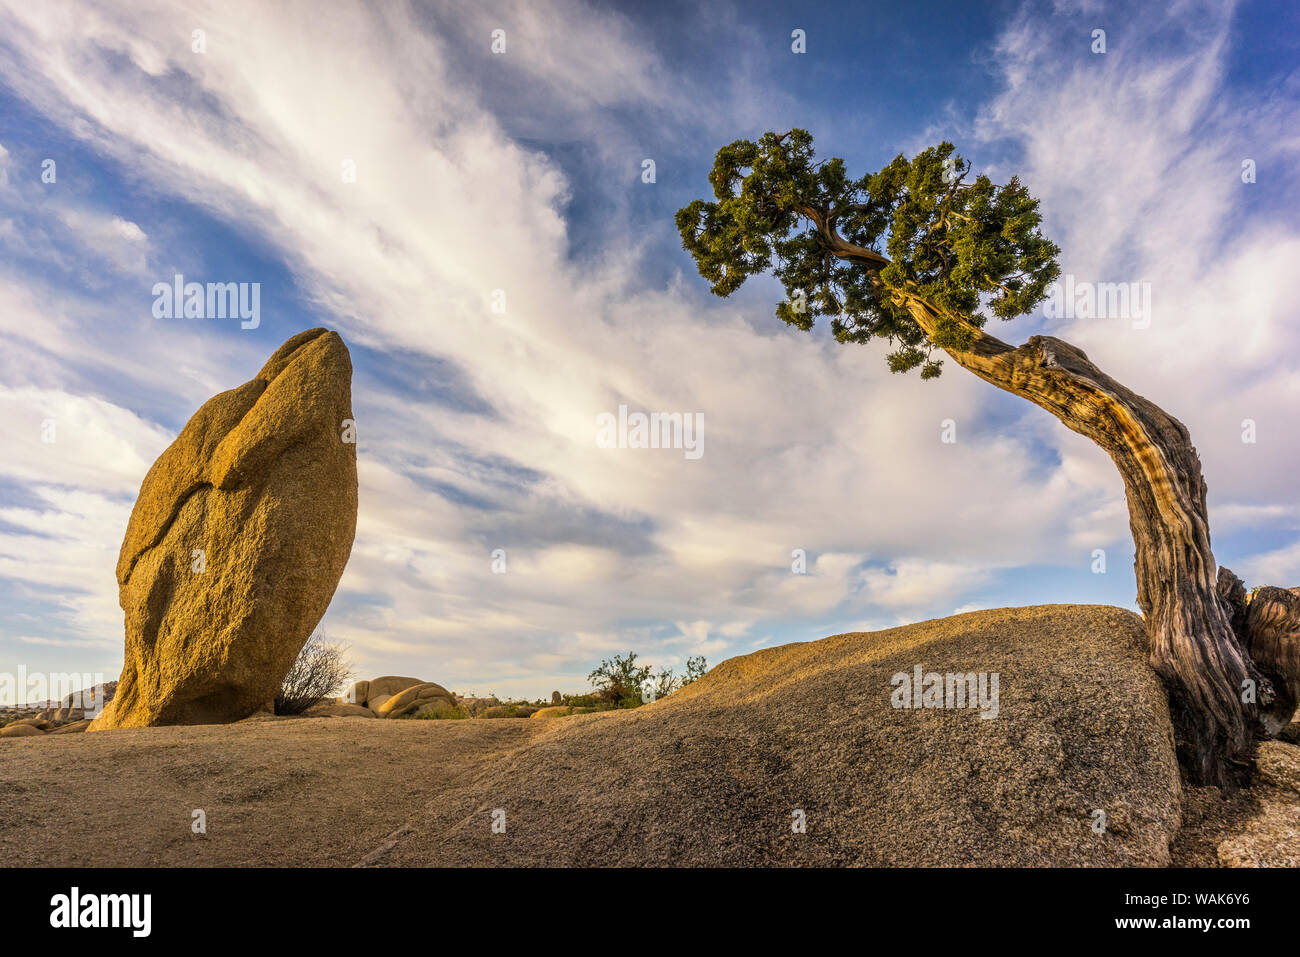 États-unis, Californie, Joshua Tree National Park. Arbre tordu et rock. En tant que crédit : Jim Nilsen / Jaynes Gallery / DanitaDelimont.com Banque D'Images